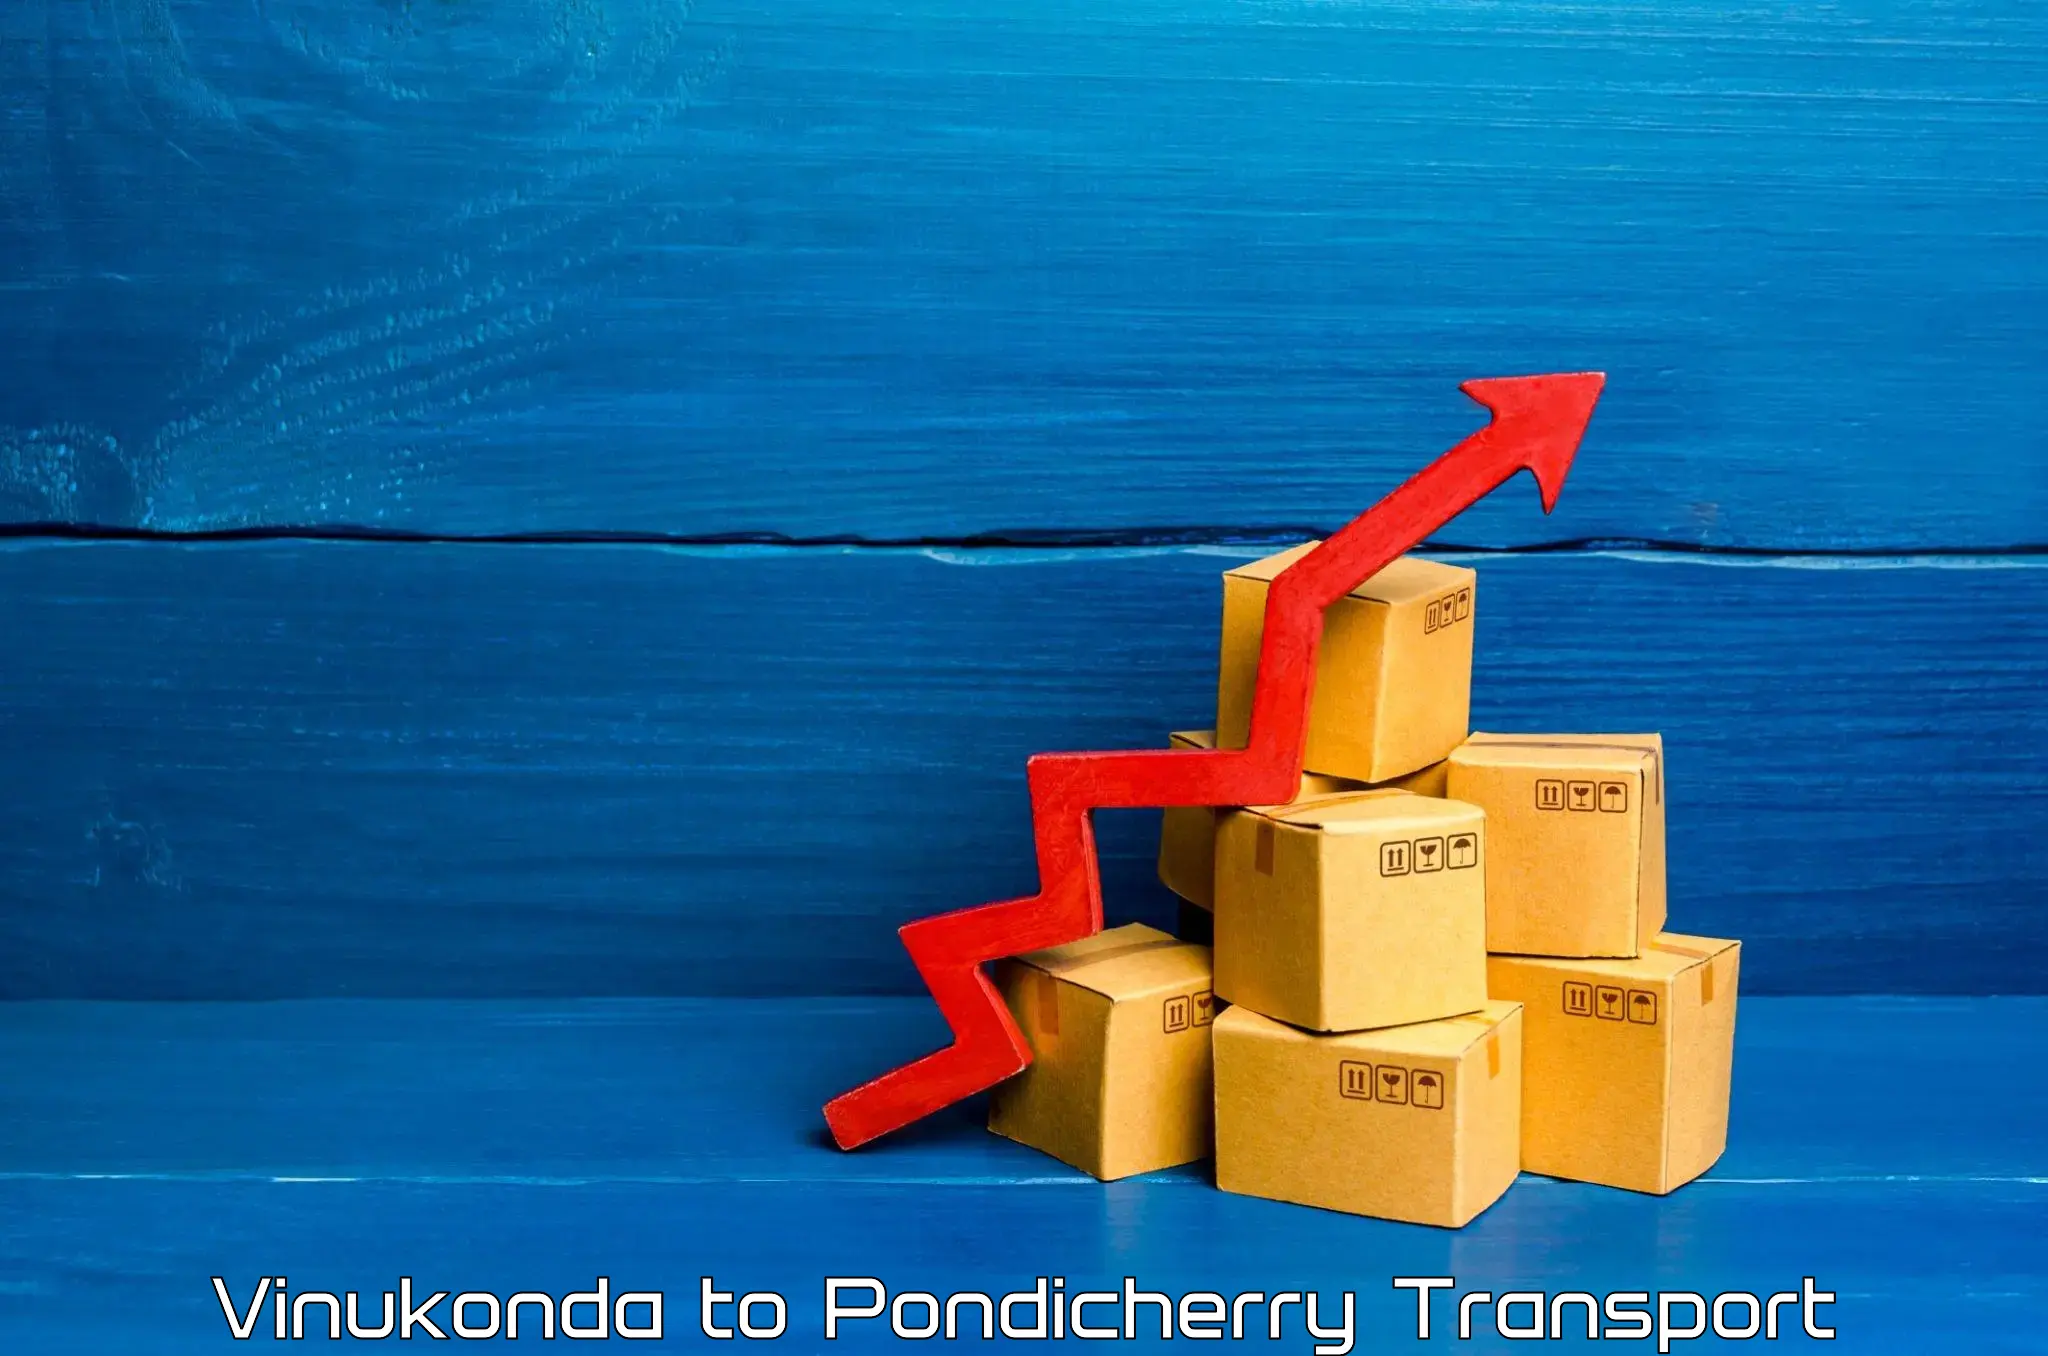 International cargo transportation services Vinukonda to Pondicherry